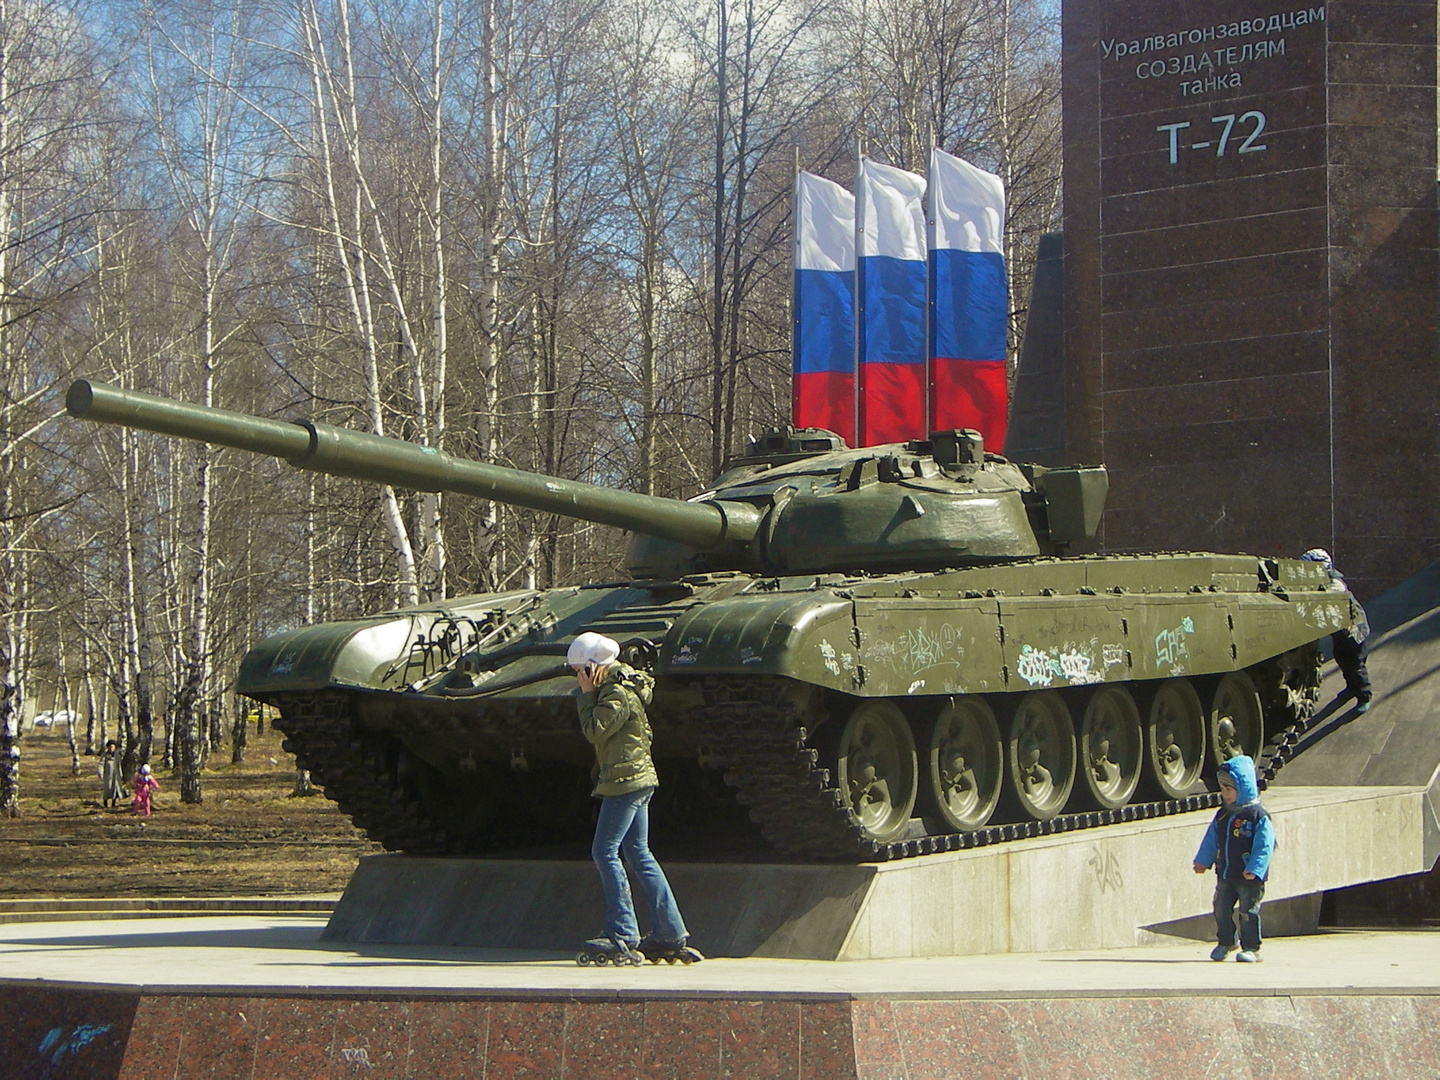 俄羅斯的T-72主戰坦克紀念碑